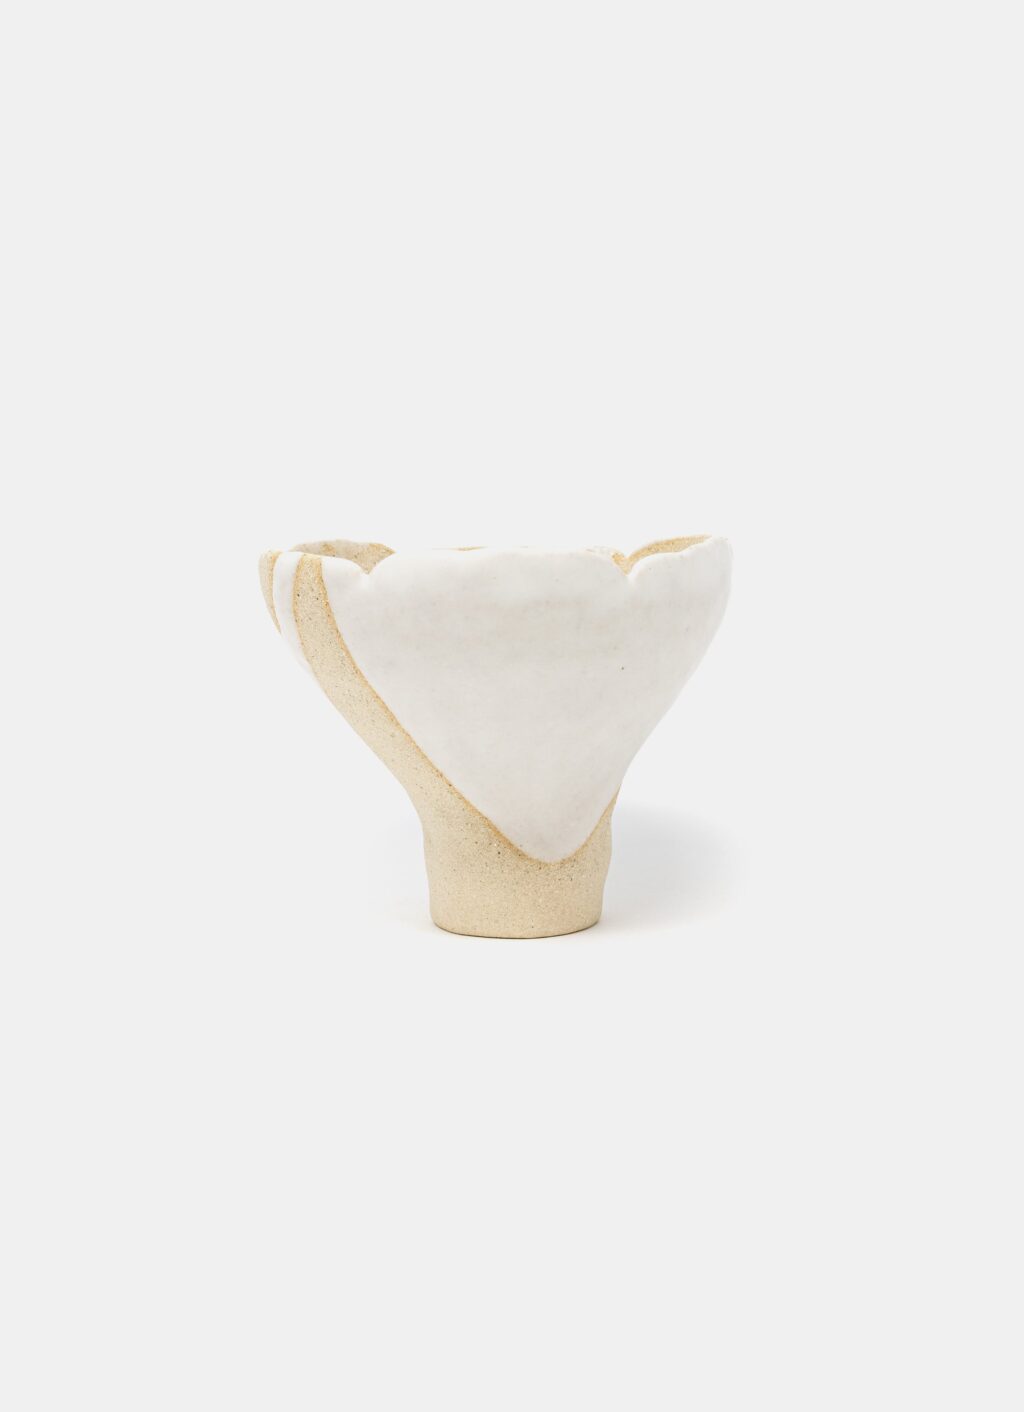 Mano Mani - Ikebana Vase - Light Stoneware and white glaze - 4